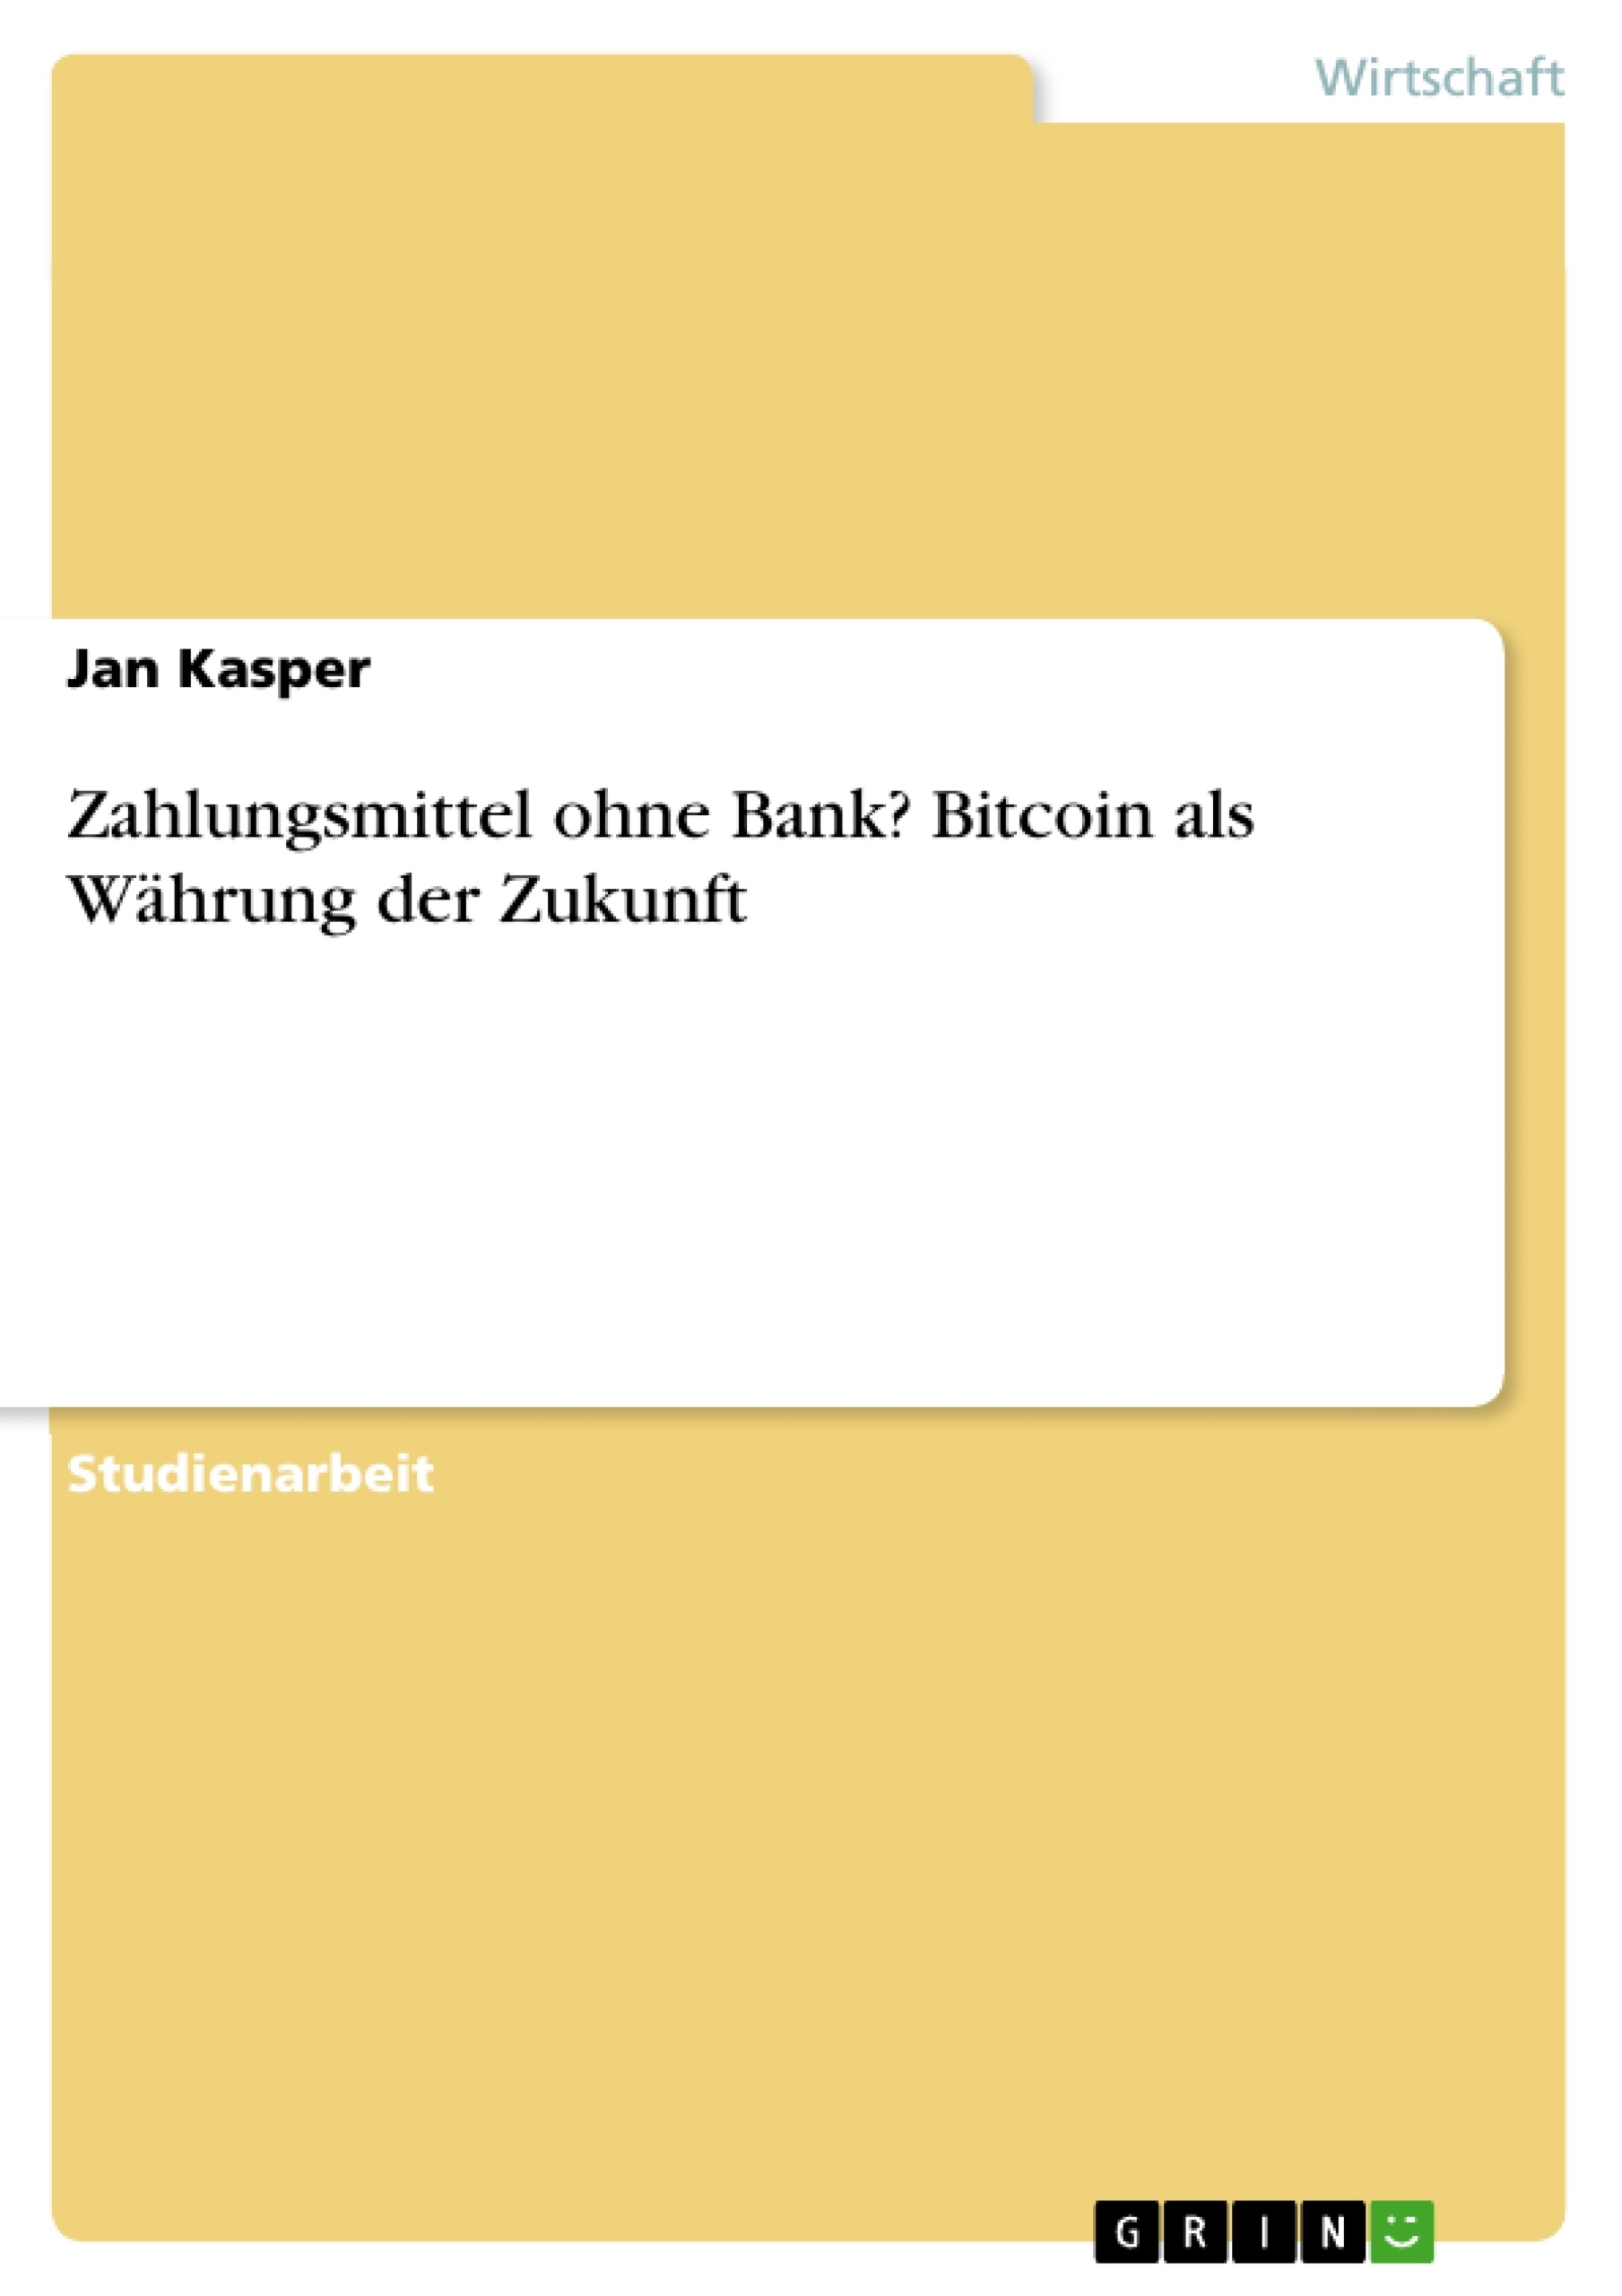 Titre: Zahlungsmittel ohne Bank? Bitcoin als Währung der Zukunft